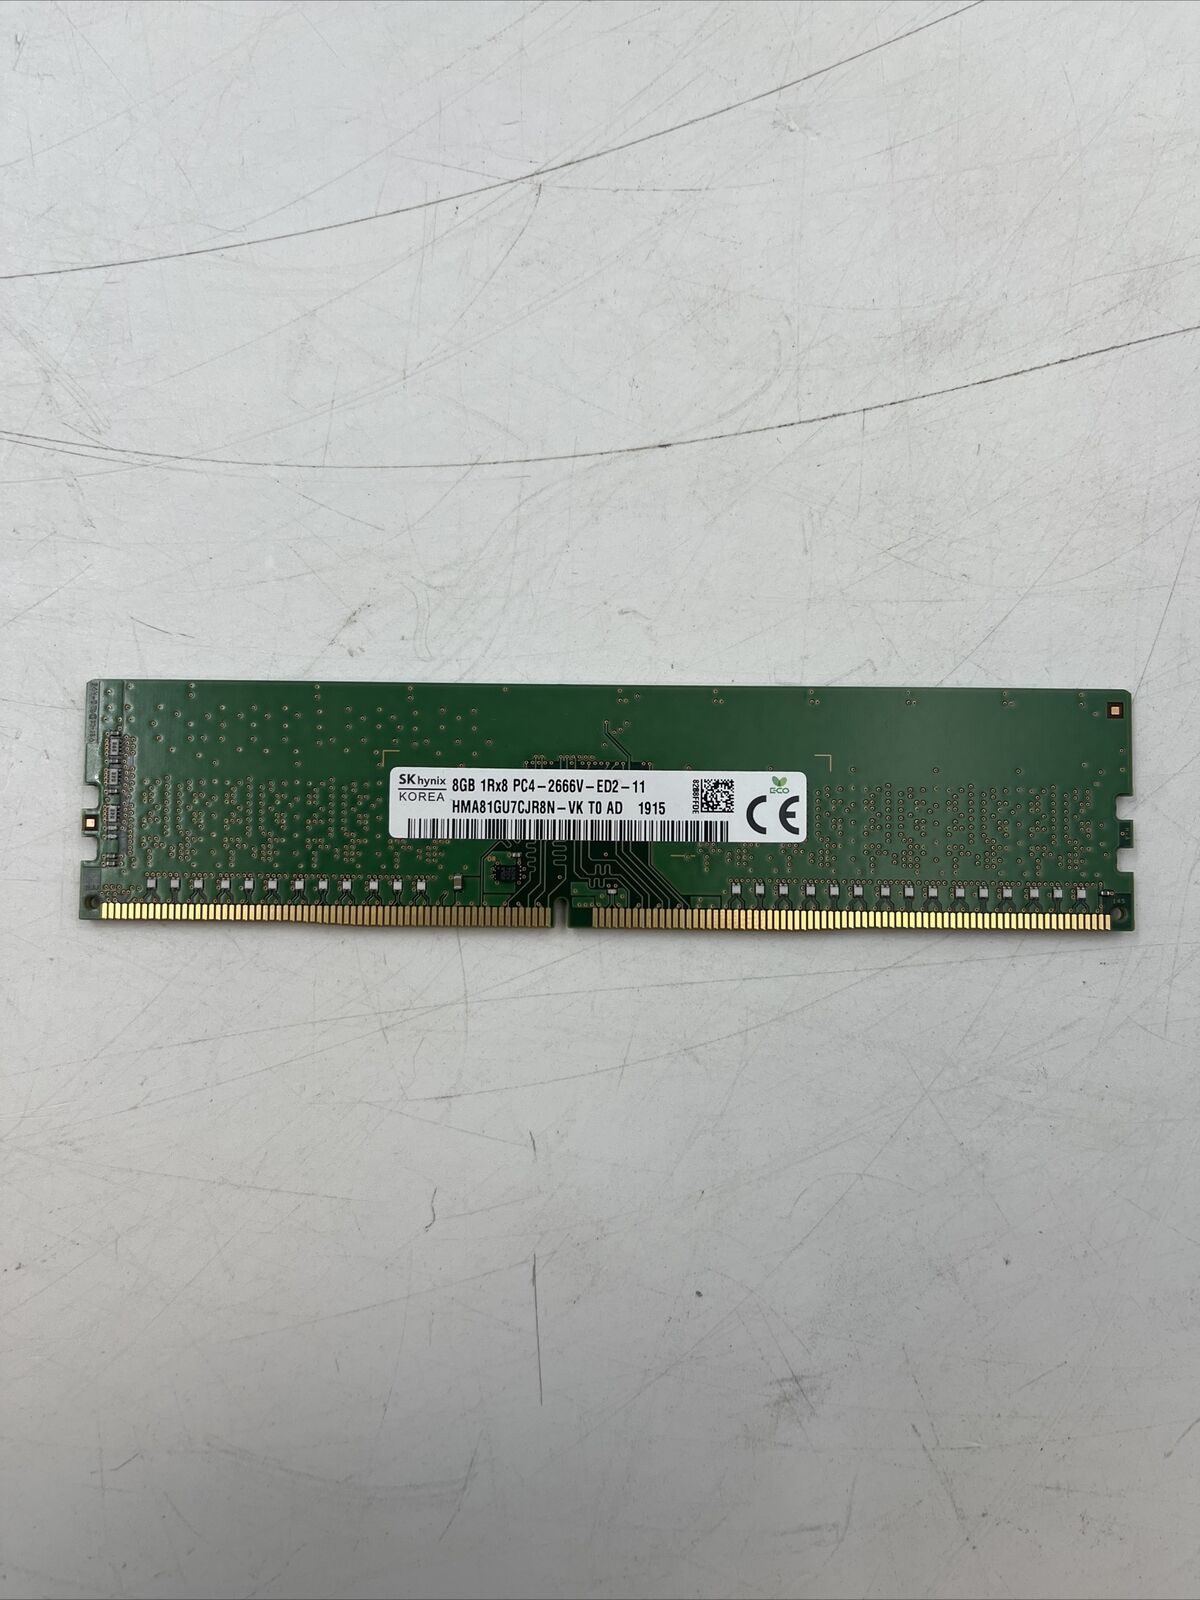 LOT OF 4 SK hynix 8GB DDR4 2666MHz ECC RAM 1Rx8 PC4-2666V-ED2-11 HMA81GU7CJR8N